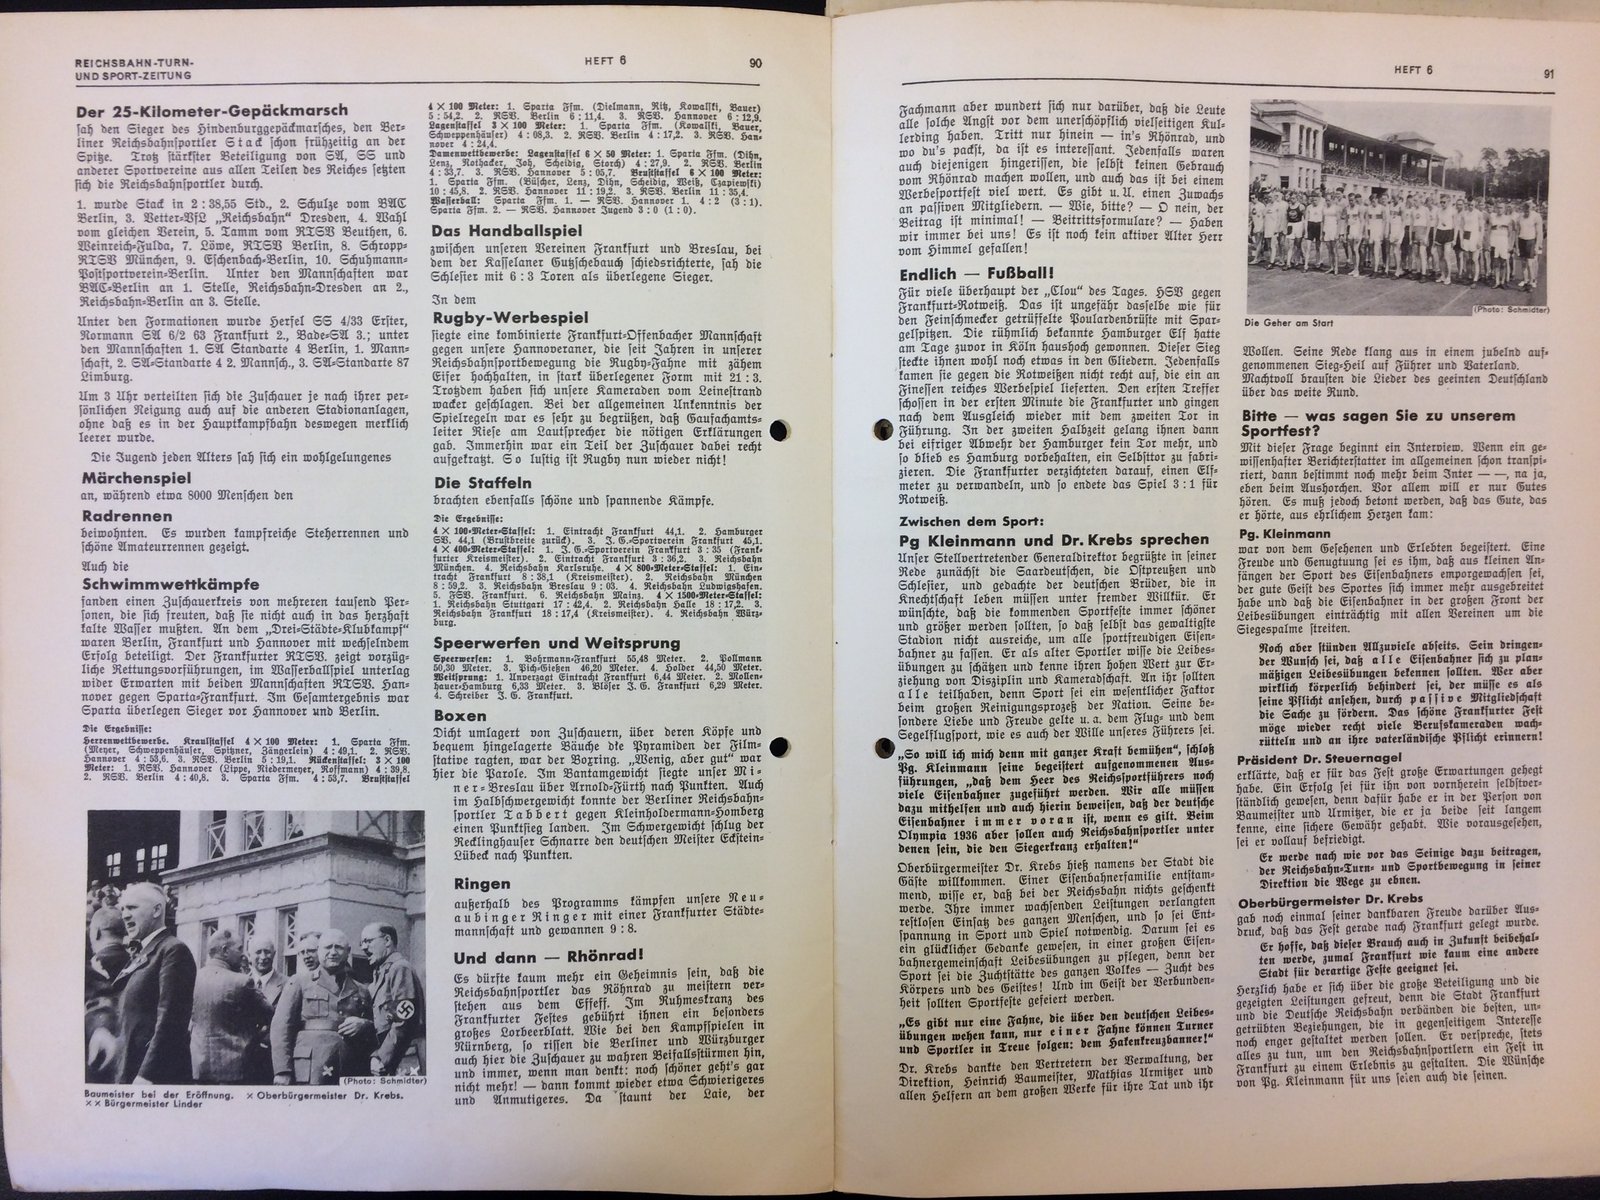 Festschrift Seite 90-91 ca. 1935